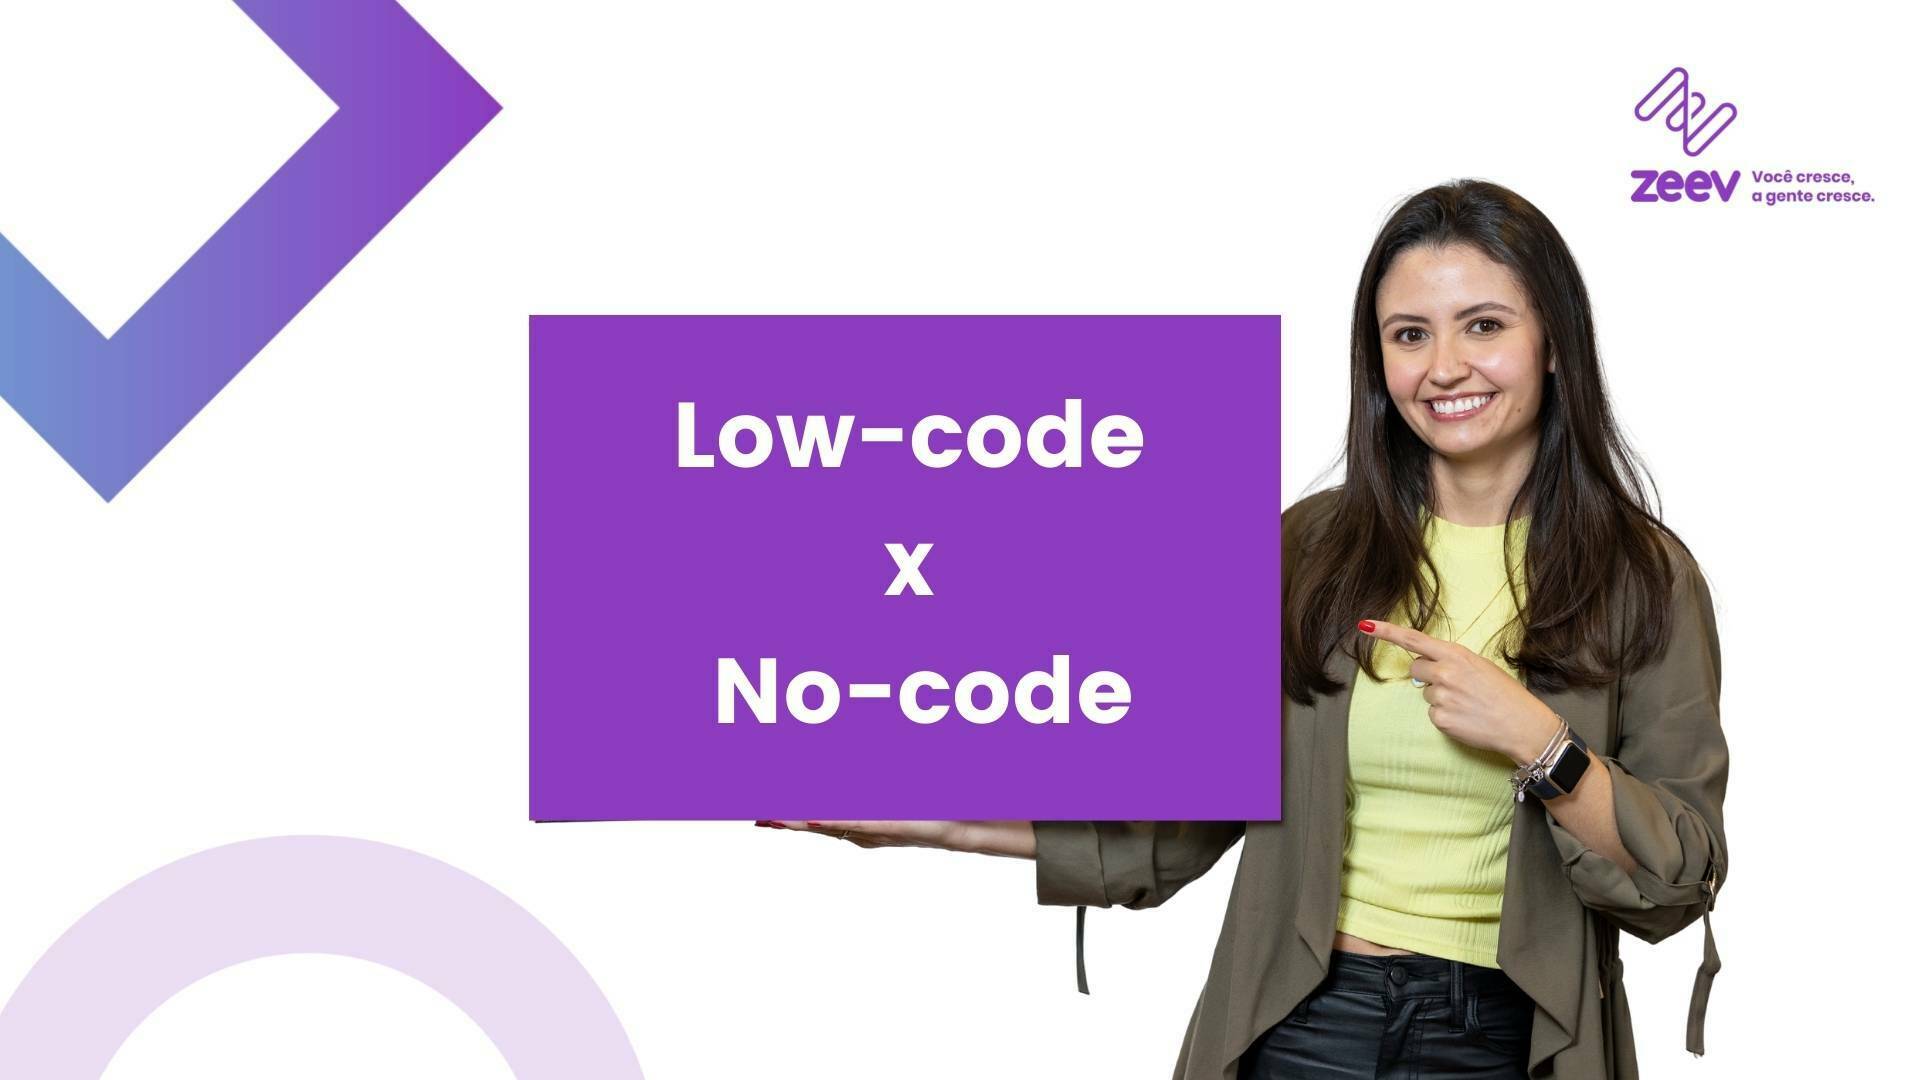 mulher apontando para o assunto do post: a diferença entre low-code e no-code